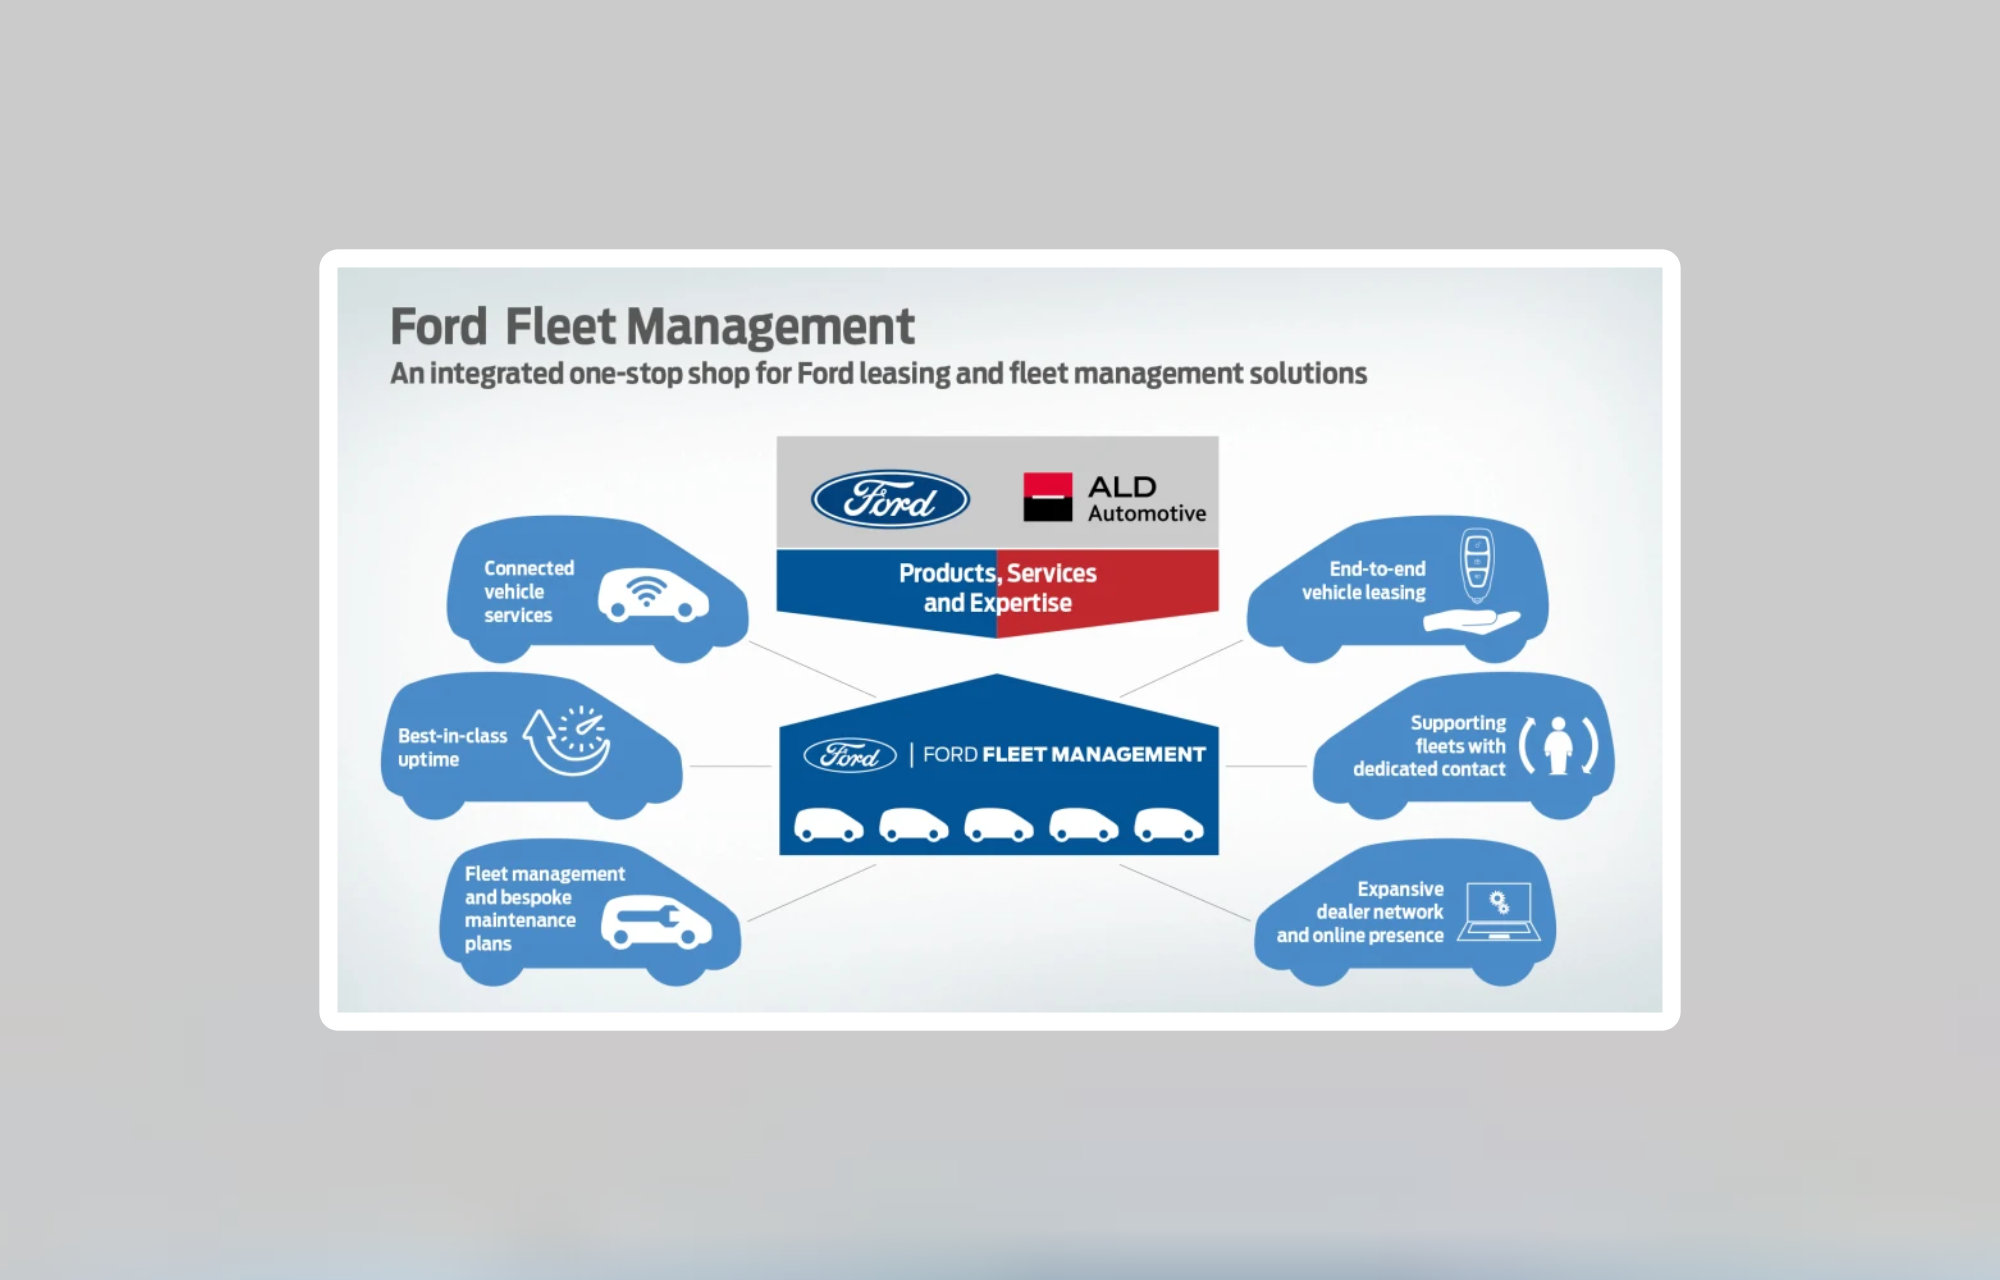 Ford og ALD Automotive lanserer New Fleet Management Business i Europa for å øke salget av kommersielle kjøretøy og til næringsmarkedet.